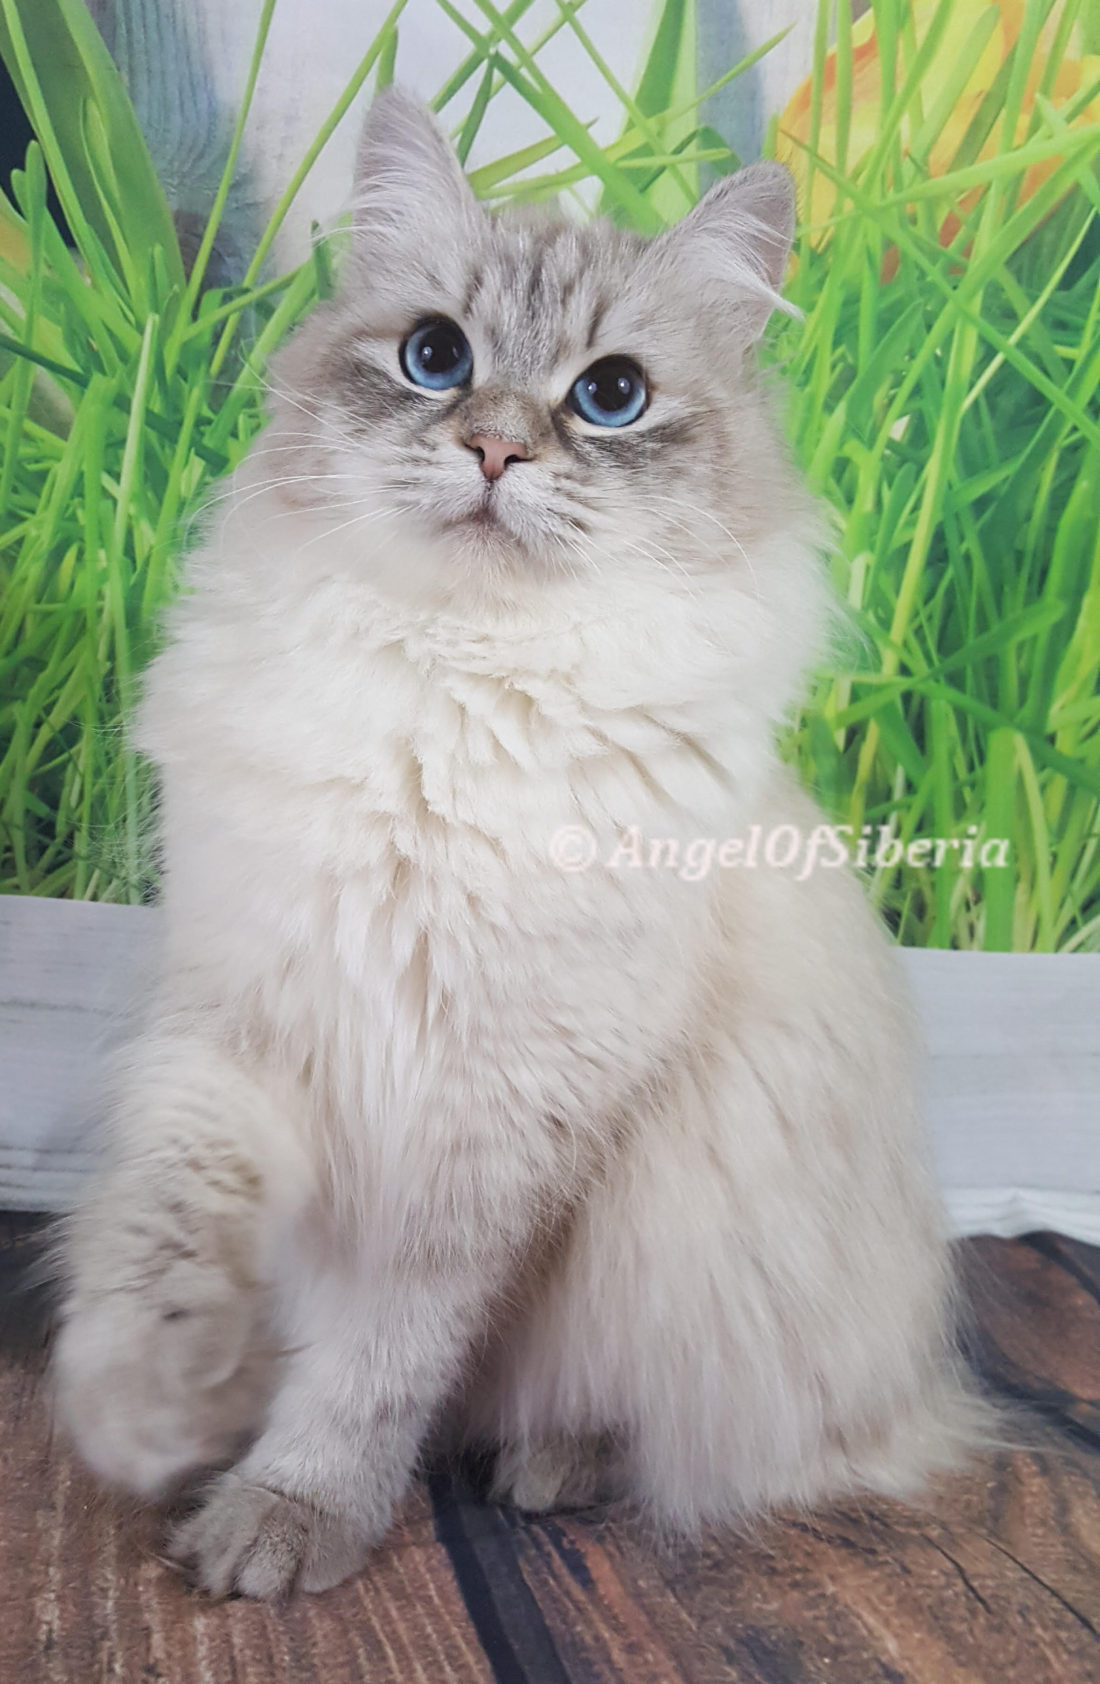 Angel of Siberia - Siberian Kittens 